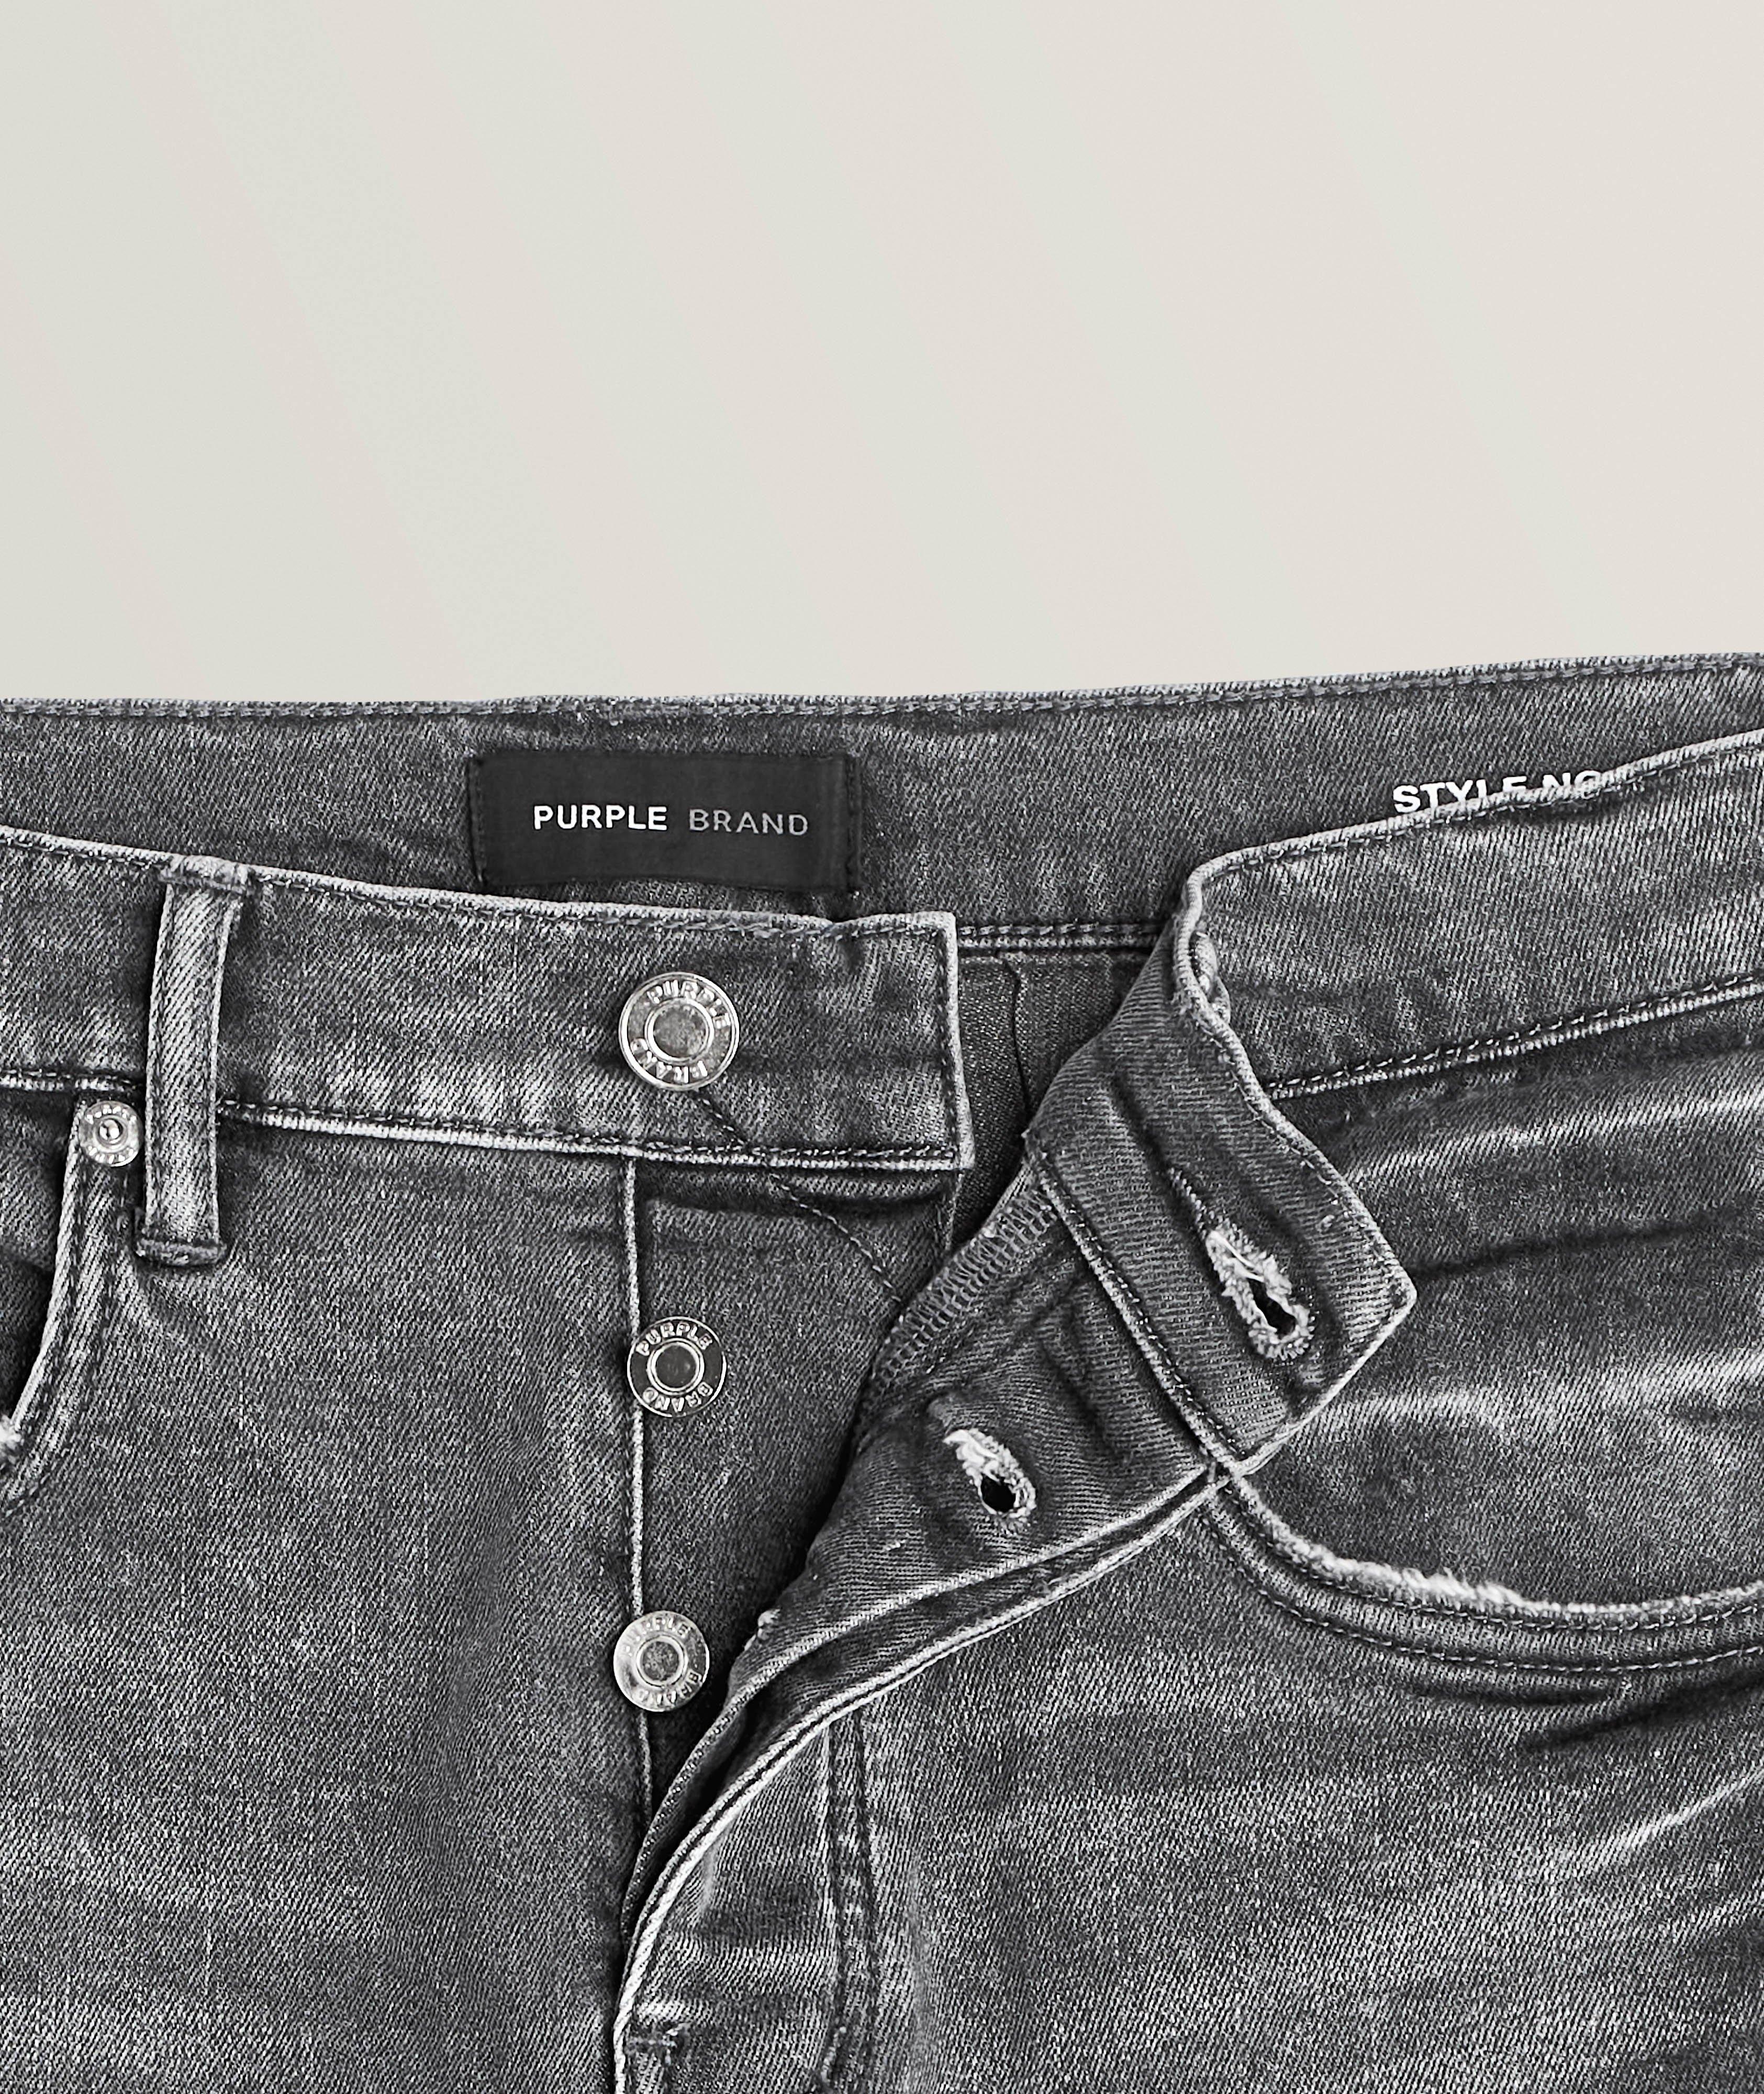 P001 Vintage-Washed Skinny Jeans image 1